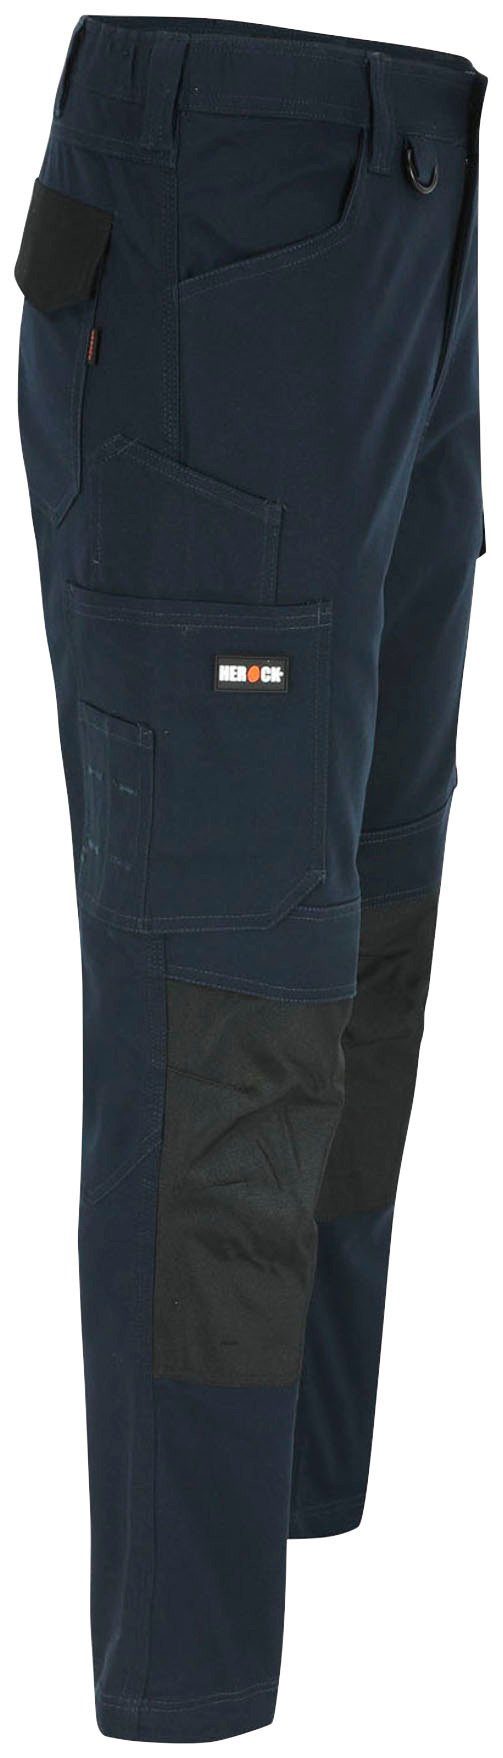 Herock Arbeitshose DERO Slim marine Fit Multi-Pocket, wasserabweisend 2-Wege-Stretch, Passform